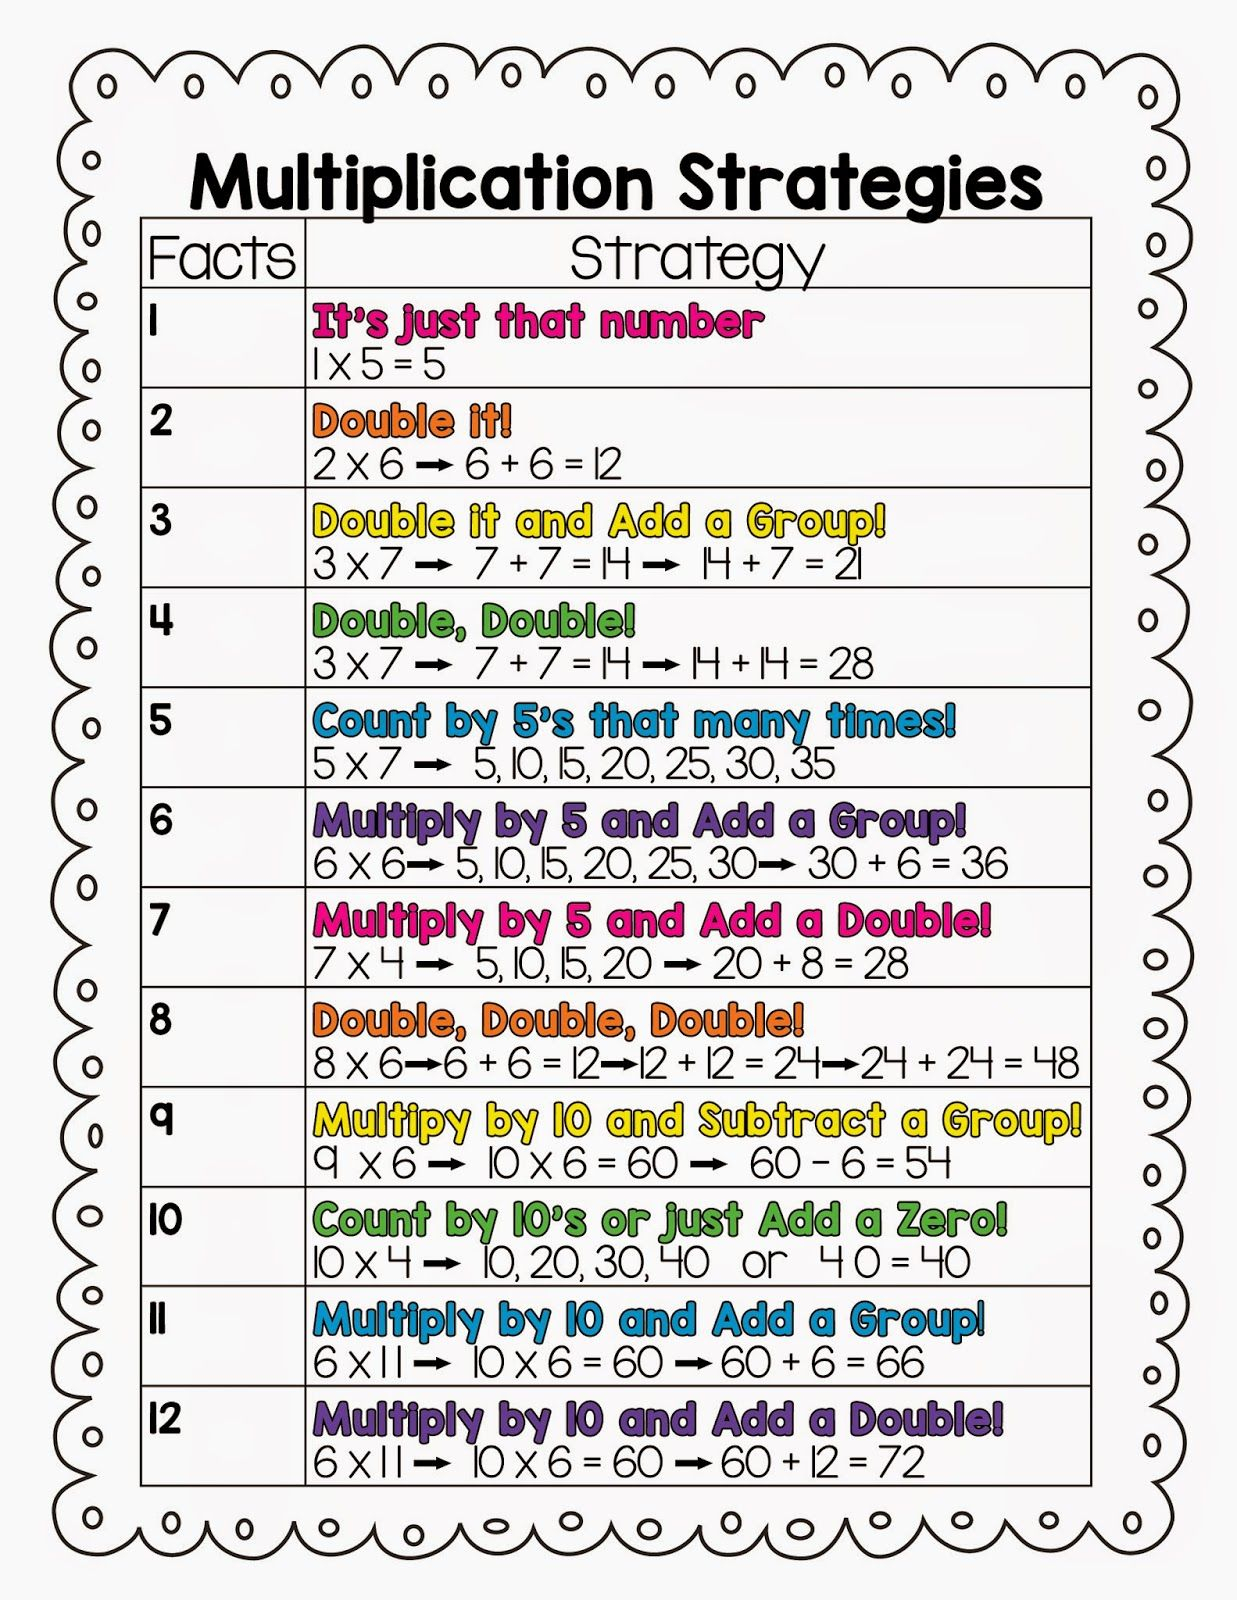 multiplication-strategies-third-grade-math-art-math-art-projects-math-tutor